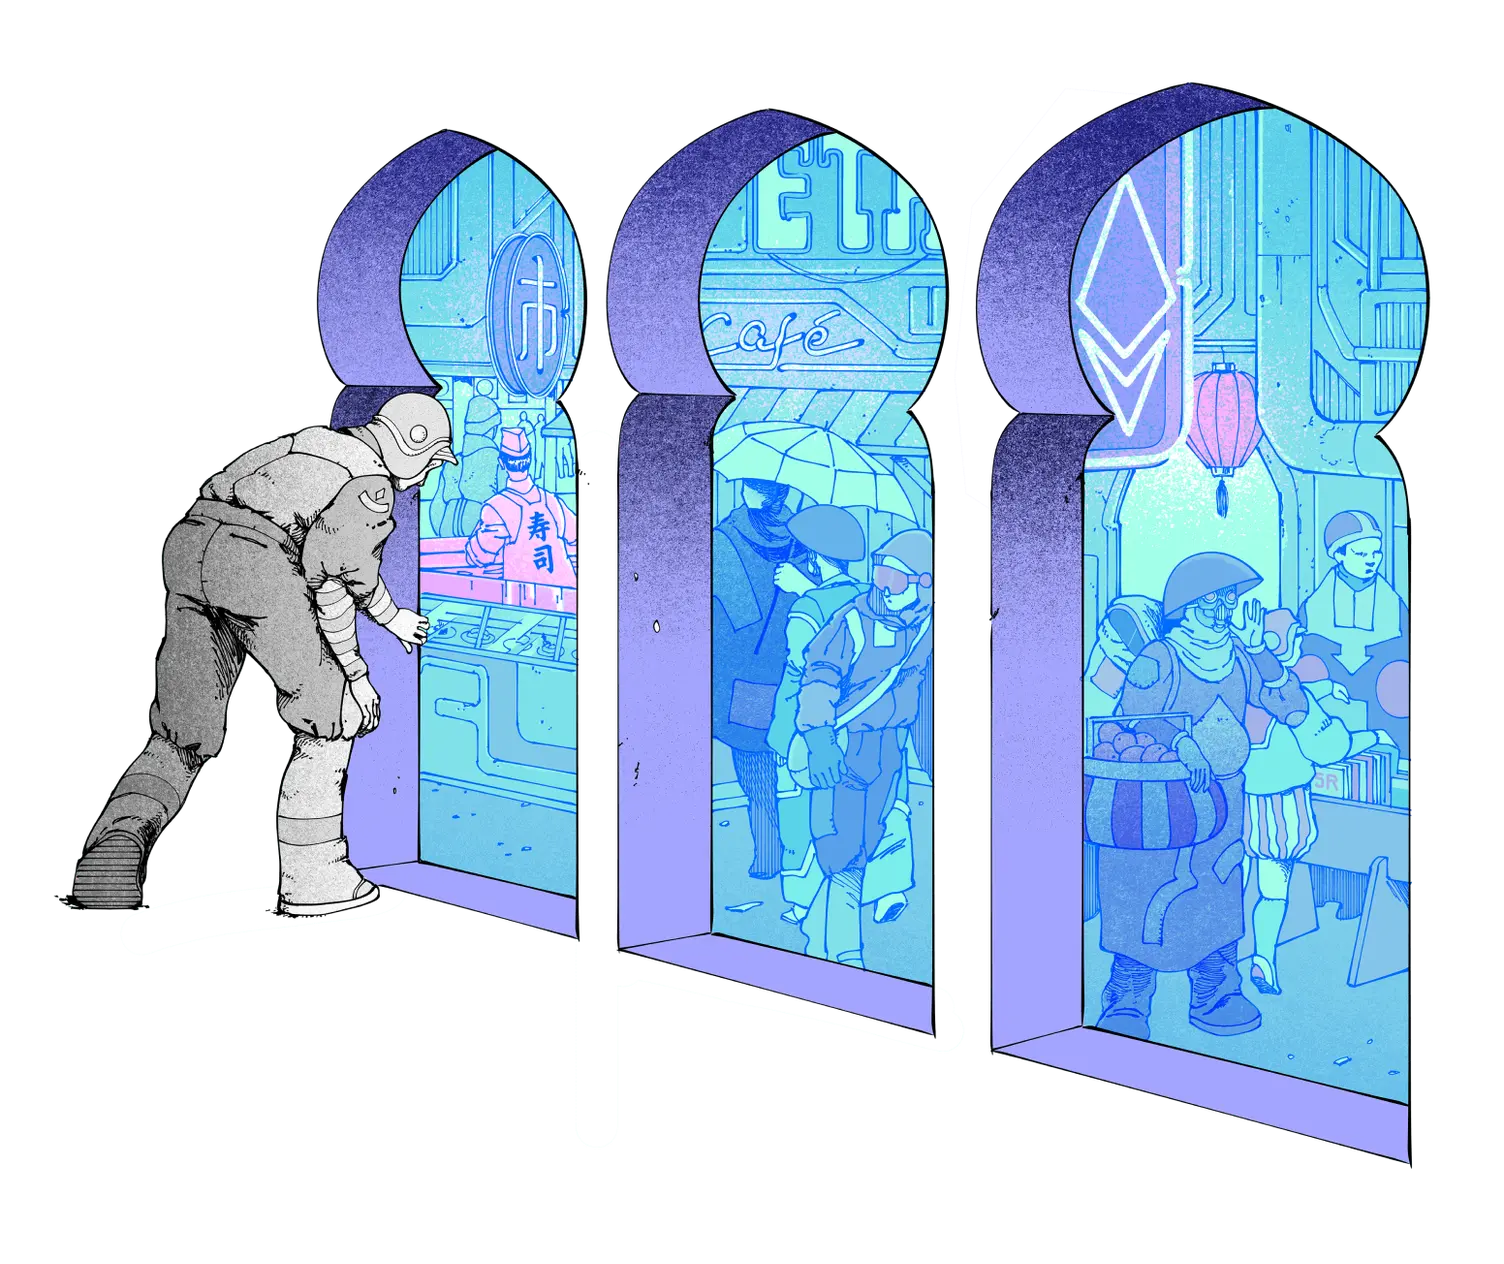 Απεικόνιση ατόμου που κοιτάζει μια αγορά μέσα από το παράθυρο, η οποία αντιπροσωπεύει το Ethereum.